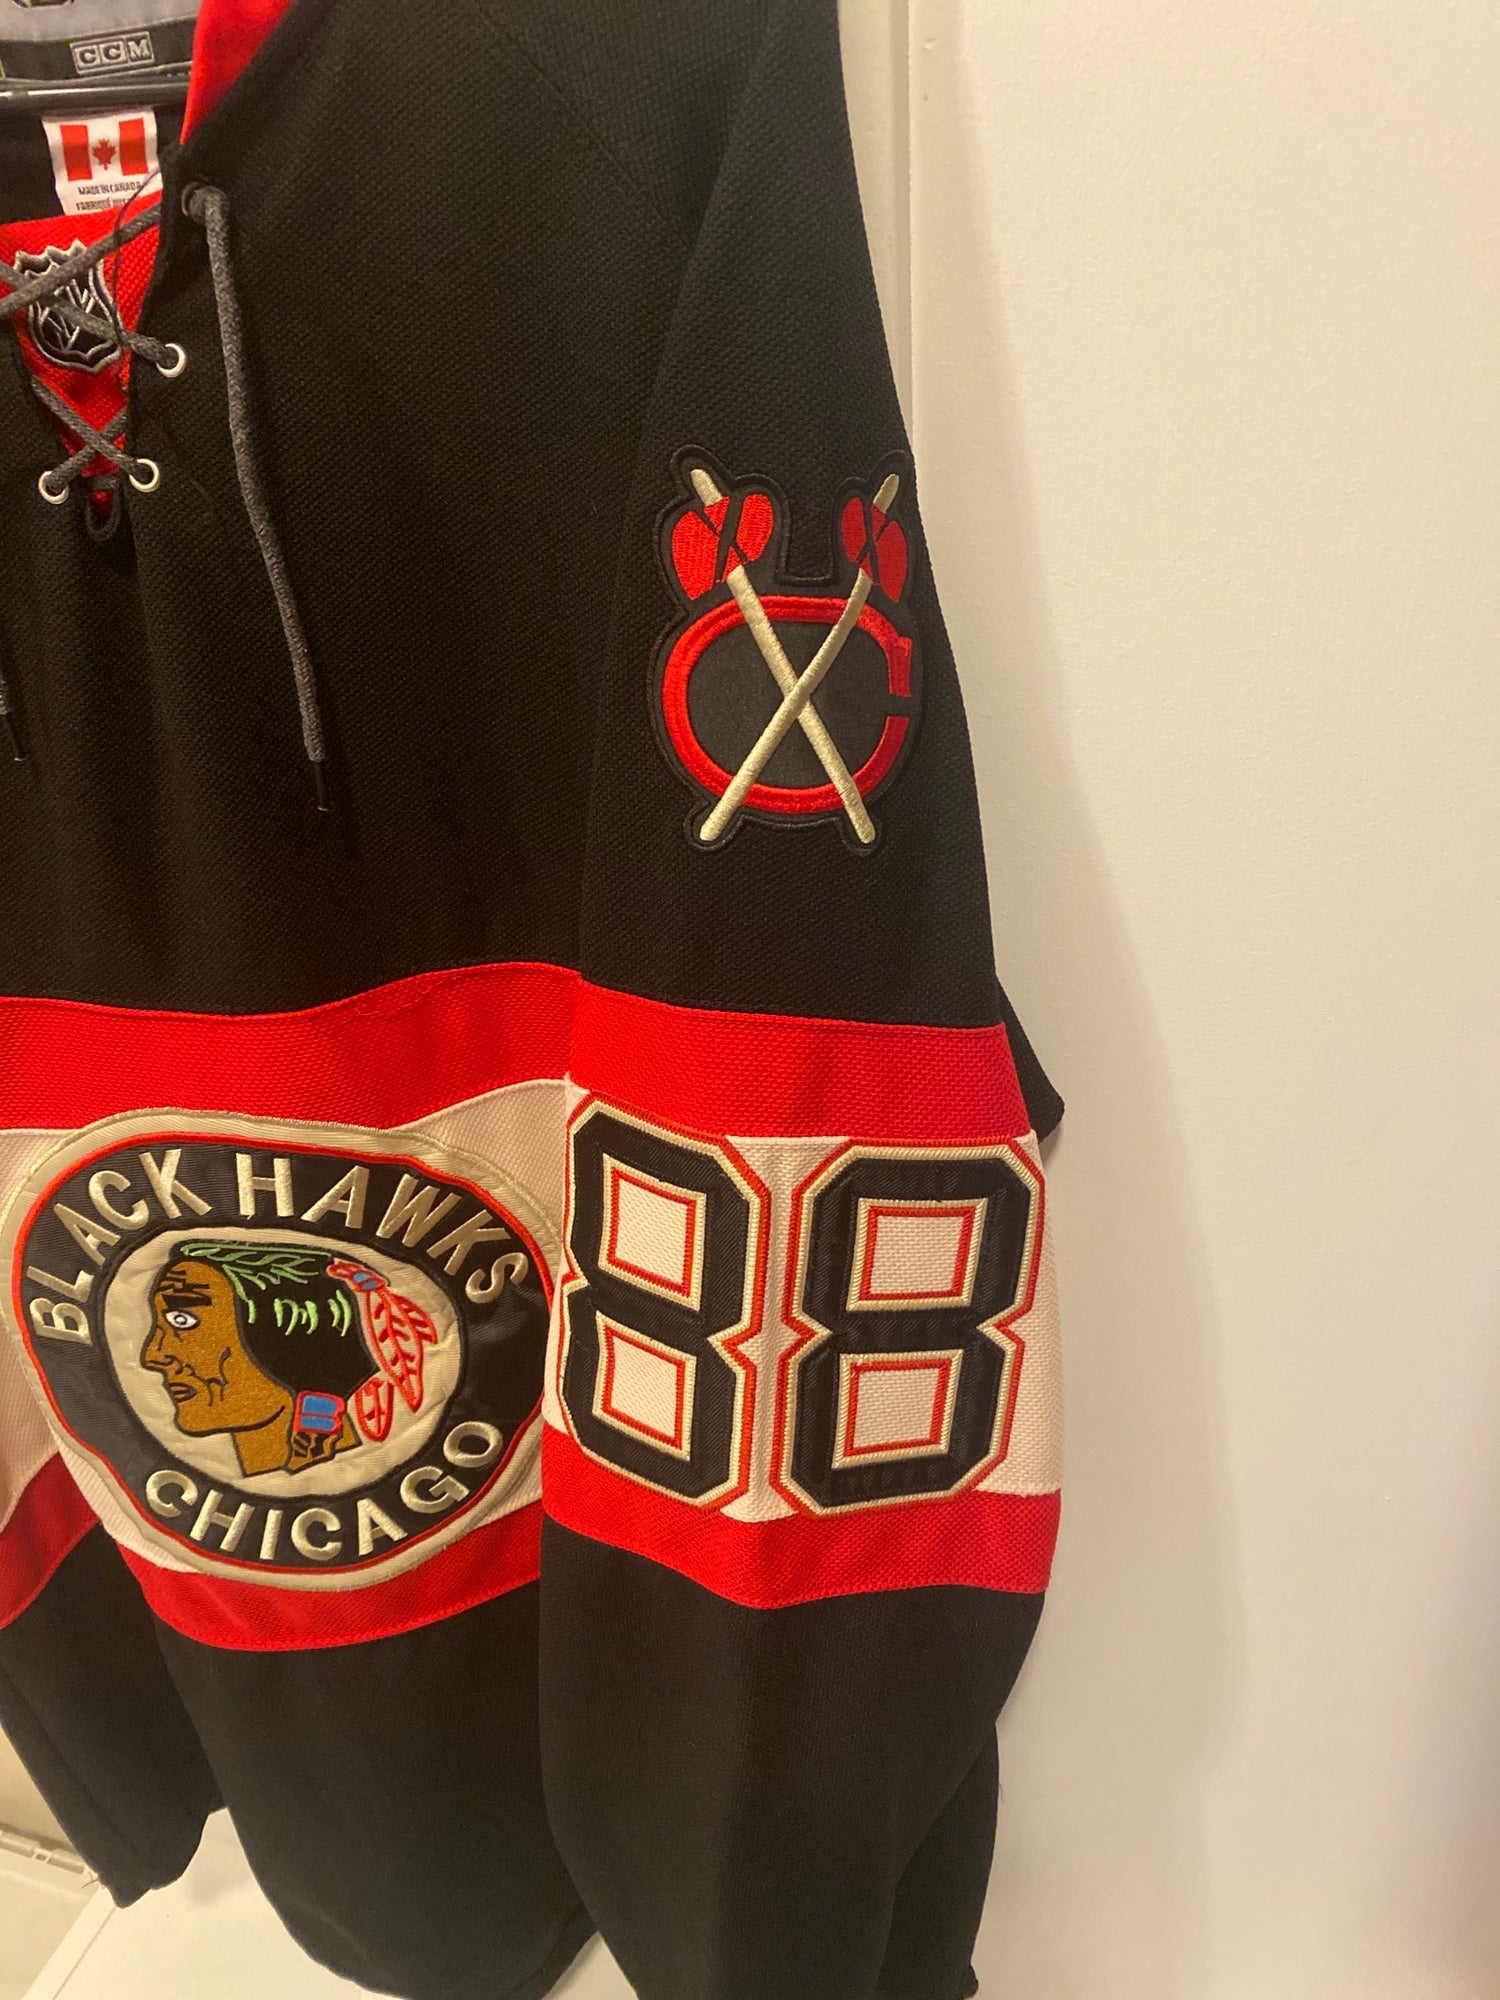 Reebok EDGE Patrick Kane Chicago Blackhawks Authentic Jersey - Camouflage